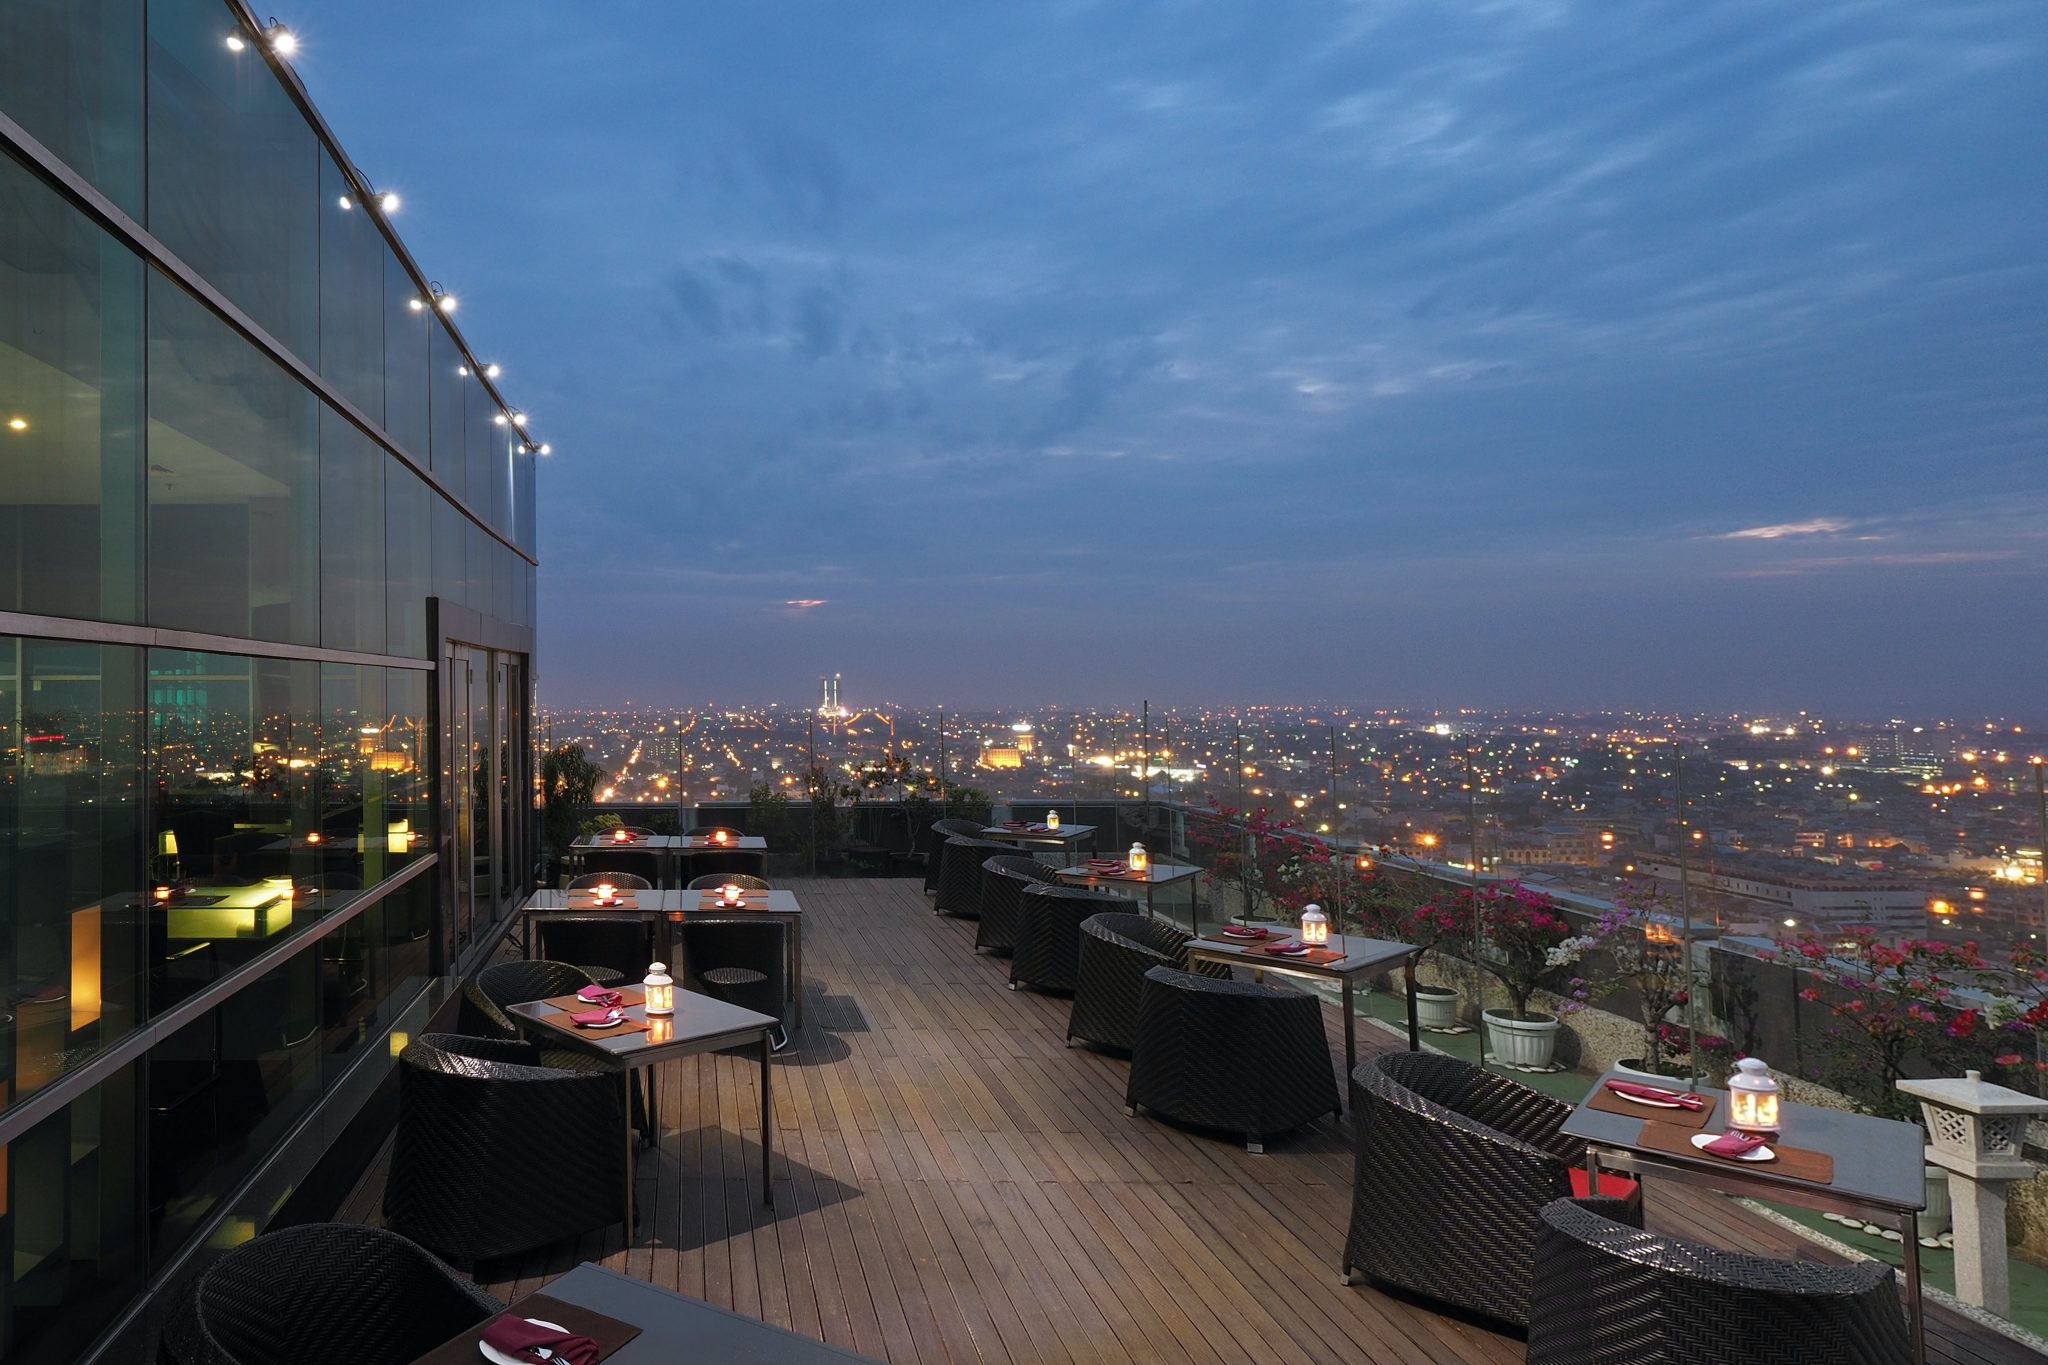 Dinner Sambil Menikmati Skyview Kota Medan di Rooftop Restaurant Ini